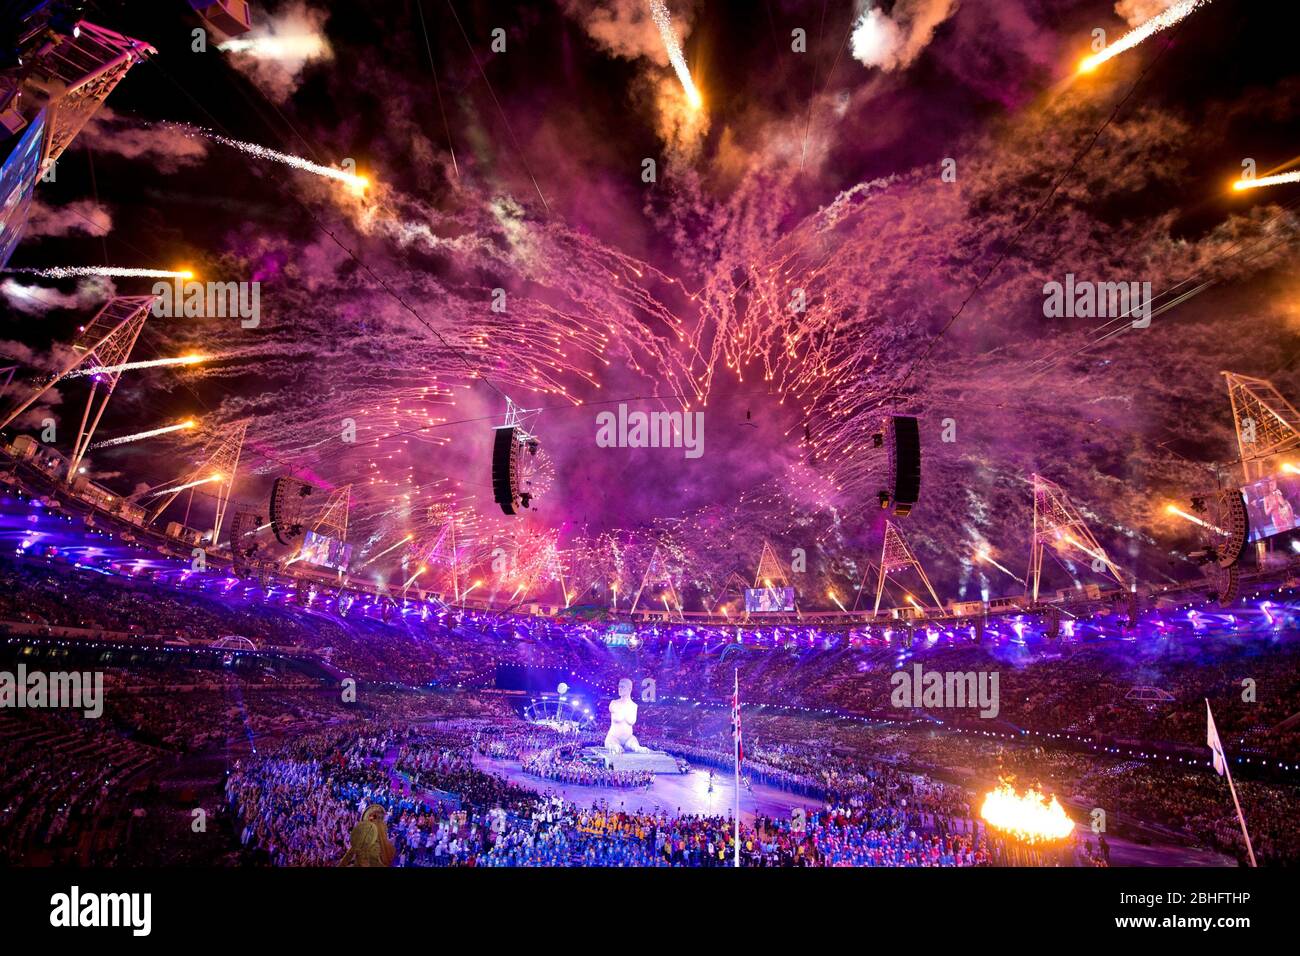 Londres, Angleterre, le 2012 août : des feux d'artifice explosent au-dessus du stade olympique du parc olympique Queen Elizabeth à Stratford lors des cérémonies d'ouverture des Jeux paralympiques de Londres de 2012. ©Bob Daemmrich Banque D'Images